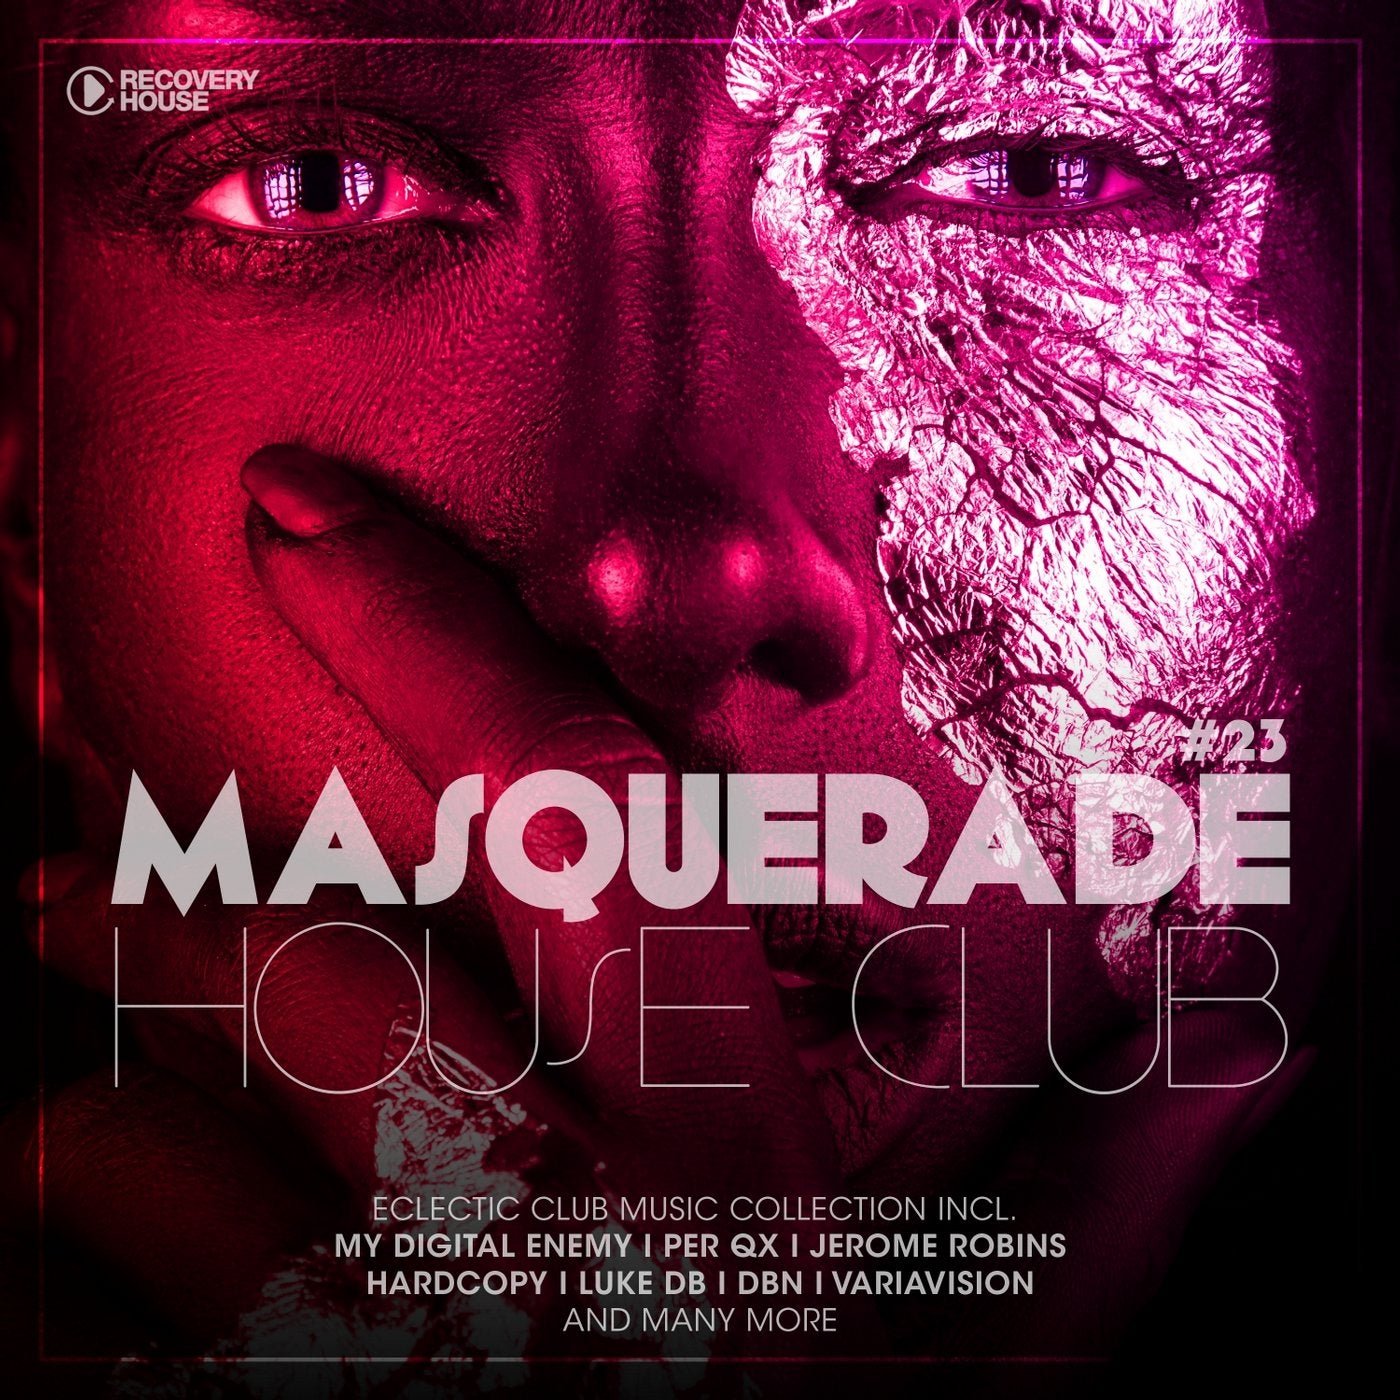 Masquerade House Club Vol. 23